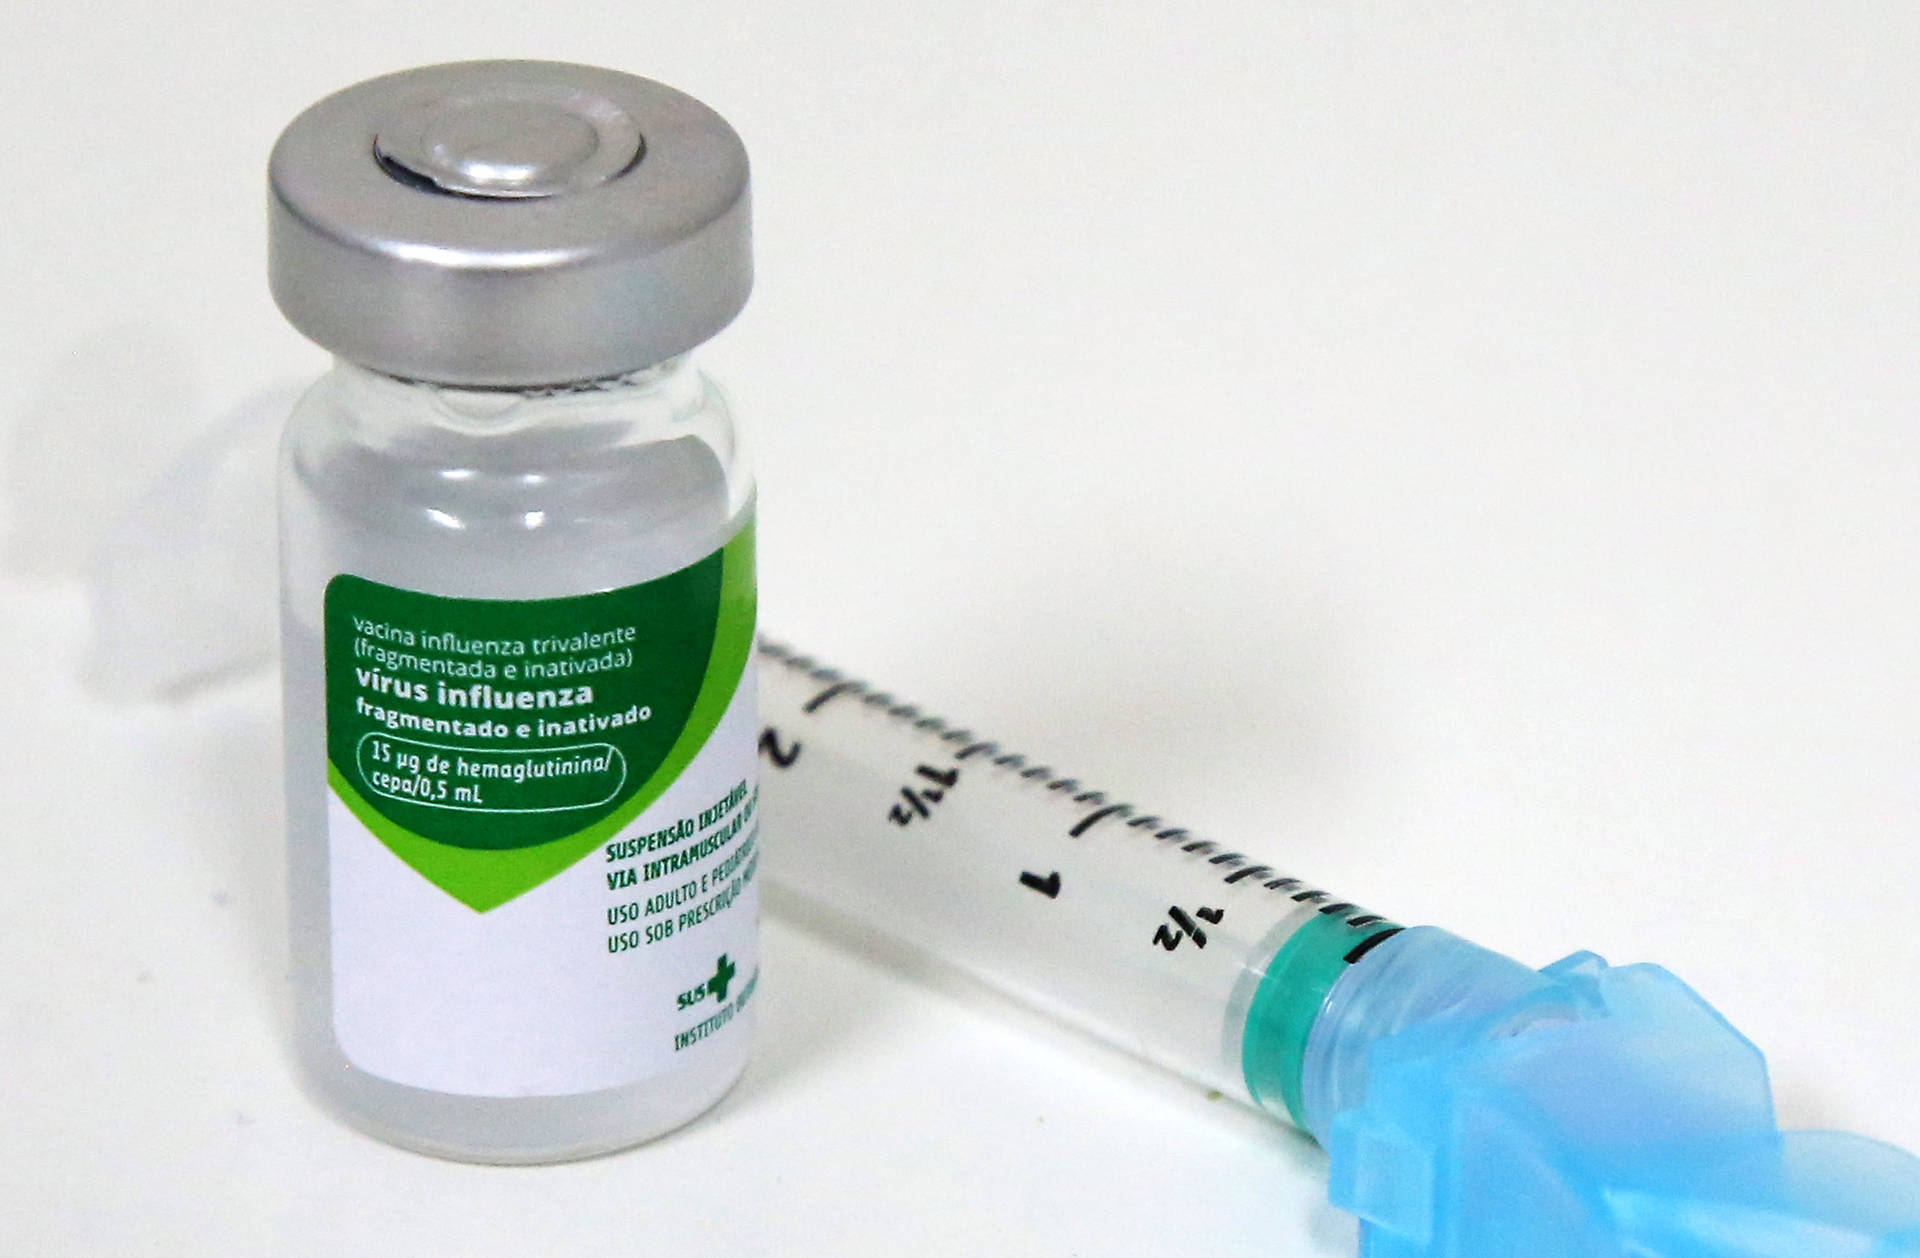 Estado já distribuiu mais de 1 milhão de doses da vacina contra a gripe